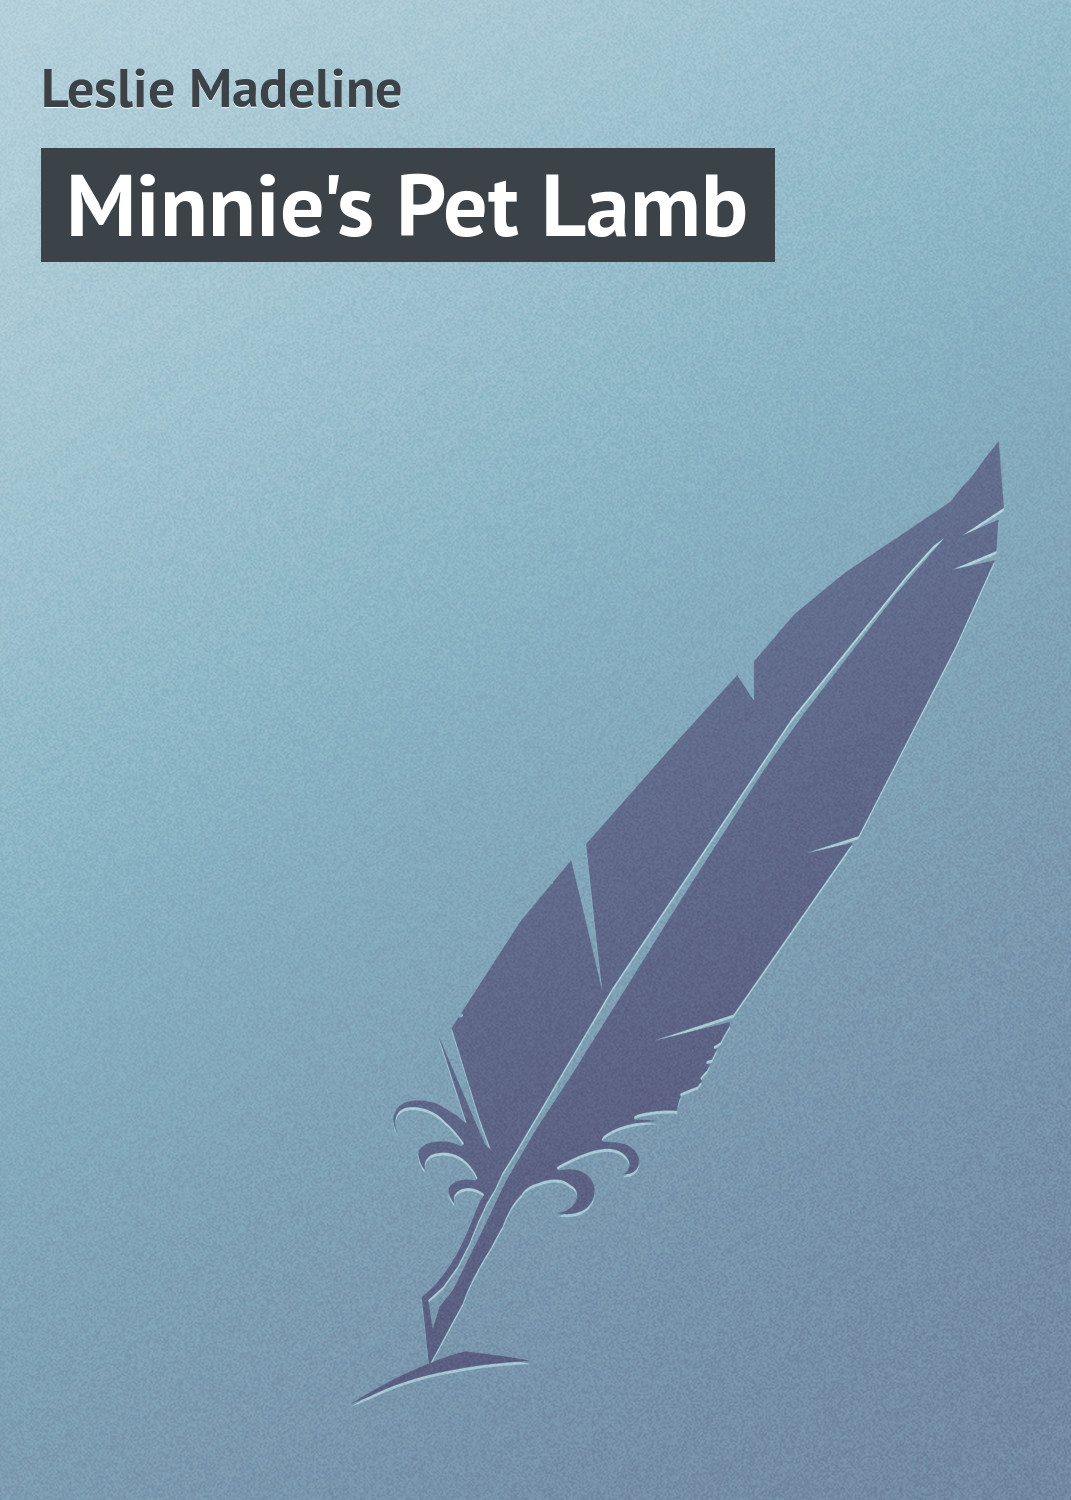 Книга Minnie's Pet Lamb из серии , созданная Madeline Leslie, может относится к жанру Зарубежная классика, Зарубежные детские книги, Иностранные языки. Стоимость электронной книги Minnie's Pet Lamb с идентификатором 23167107 составляет 5.99 руб.